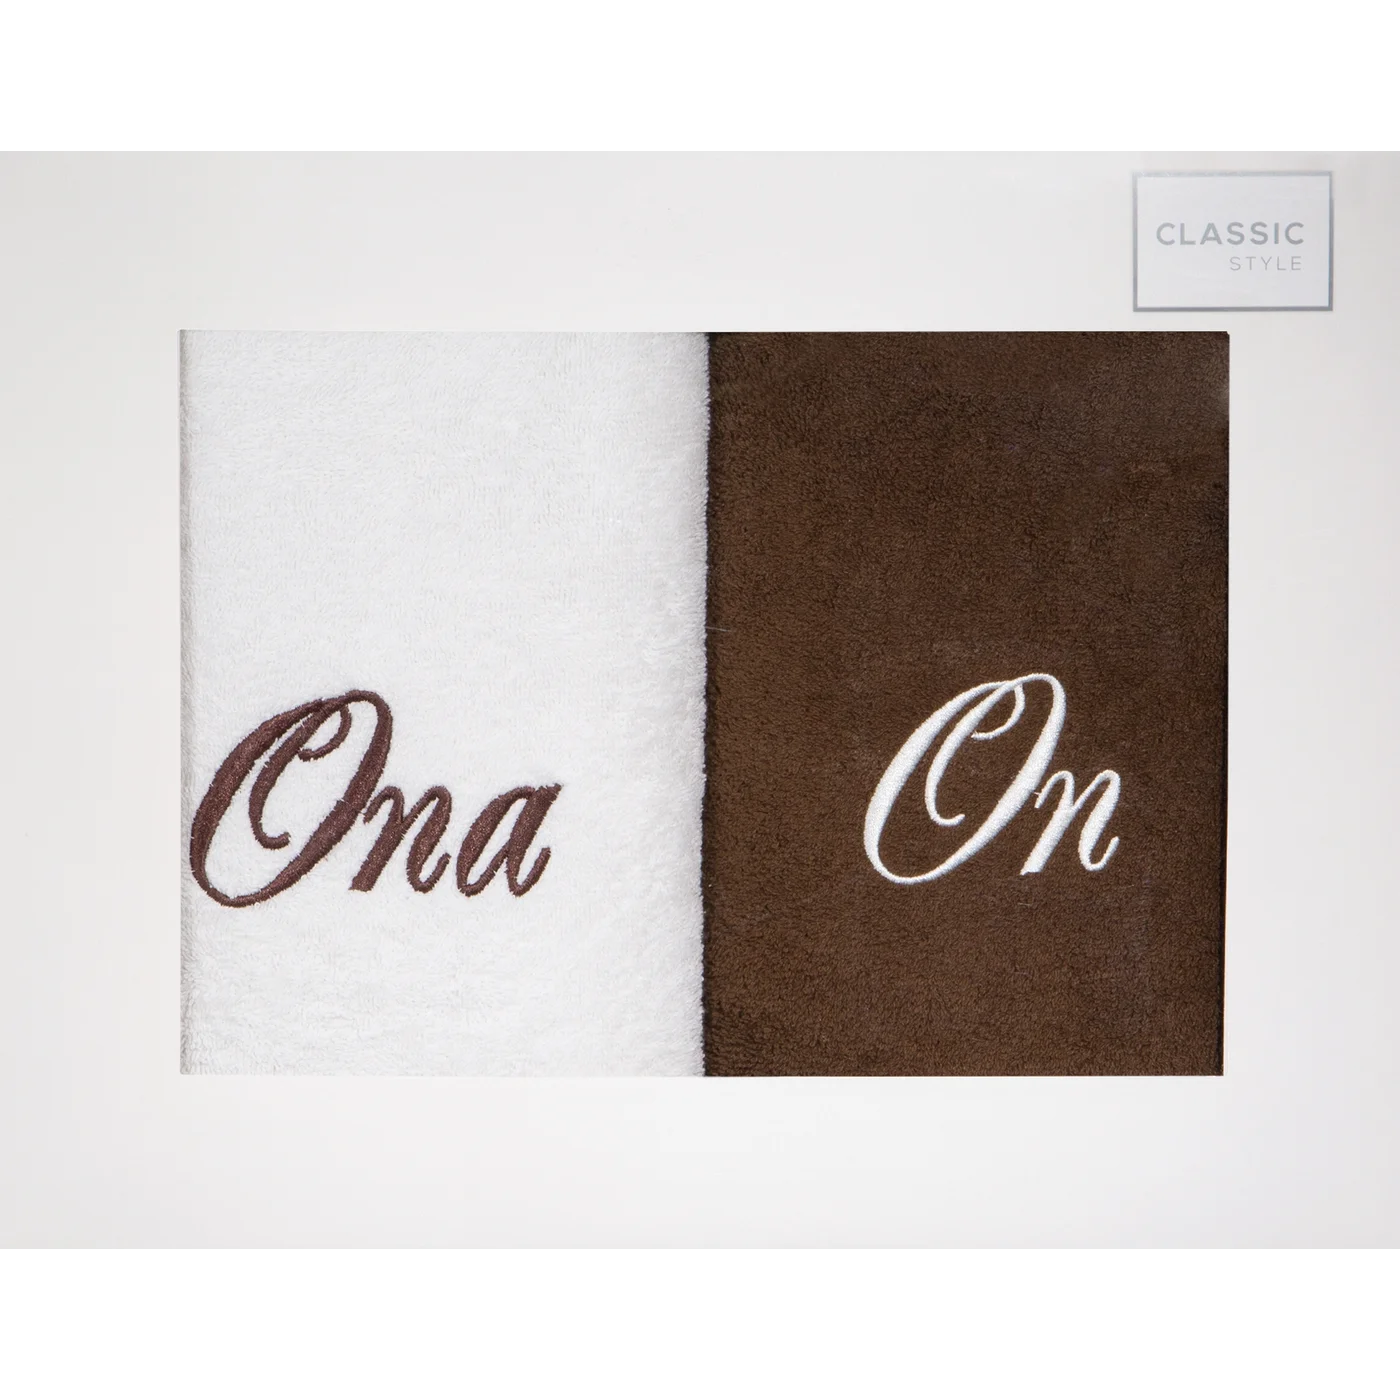 Zestaw upominkowy 2 szt ręczników  z haftem ONA i ON w kartonowym opakowaniu na prezent